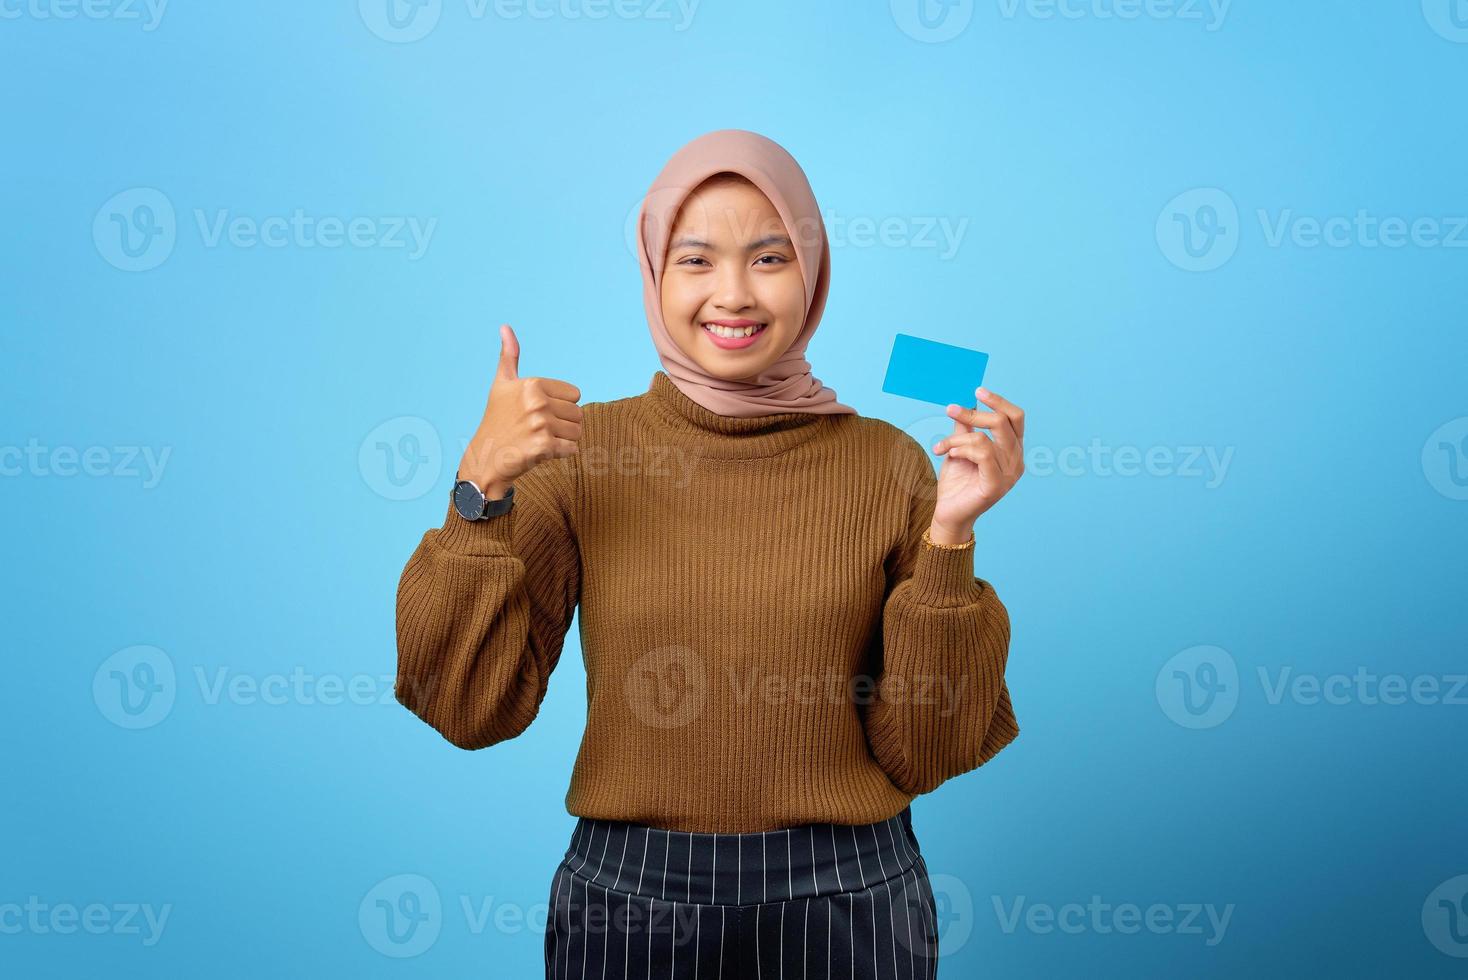 allegra giovane donna asiatica in possesso di carta di credito e mostrando il pollice in alto gesto su sfondo blu foto